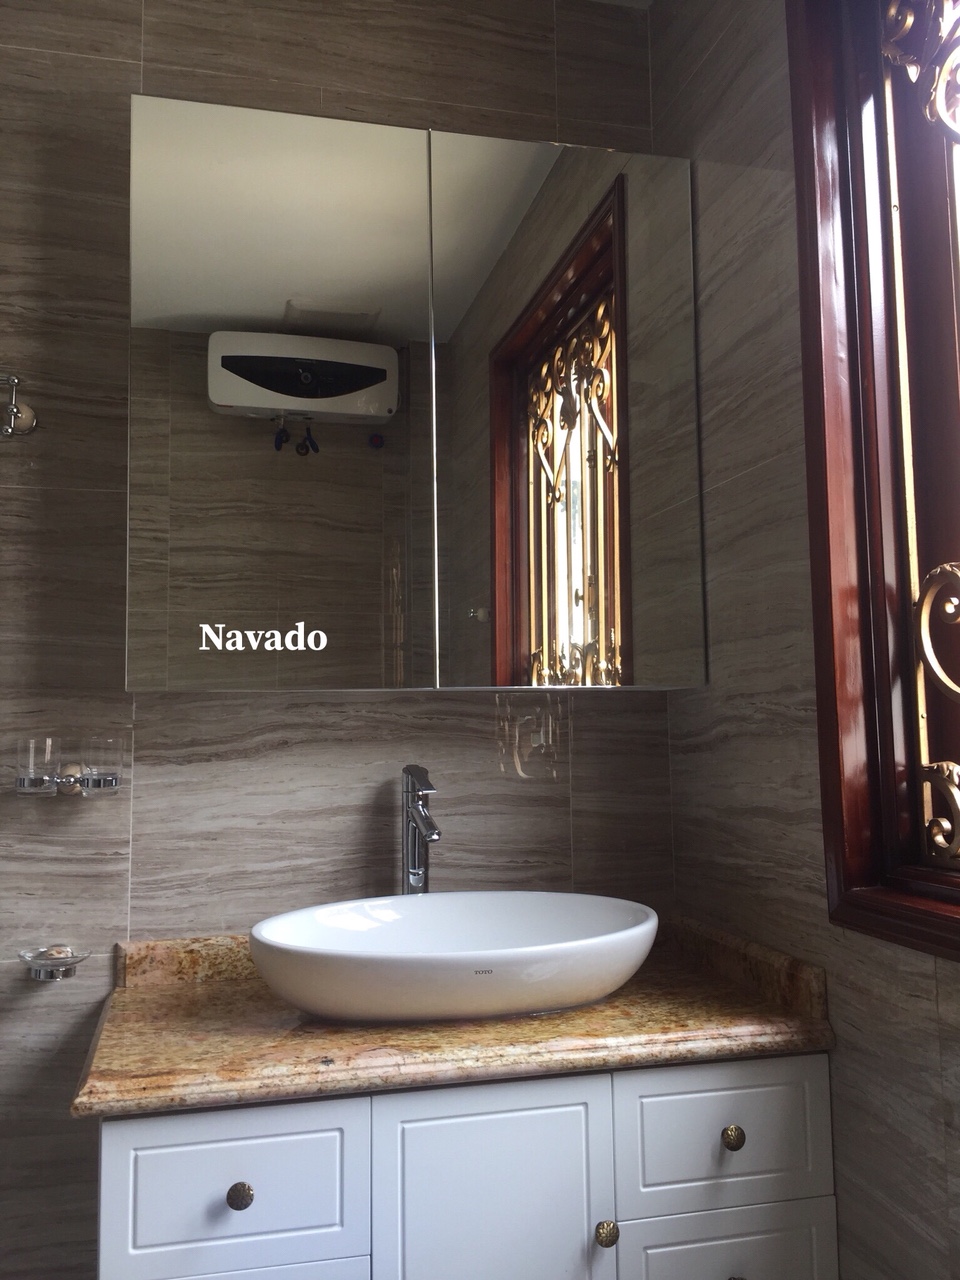 Navado: Navado - thương hiệu thiết bị vệ sinh hàng đầu - mang đến cho bạn những giải pháp tiên tiến và đột phá nhất để giúp bạn có được không gian phòng tắm lý tưởng. Những sản phẩm từ Navado không chỉ đáp ứng được nhu cầu sử dụng mà còn cả các tiêu chuẩn về thẩm mỹ và chất lượng.